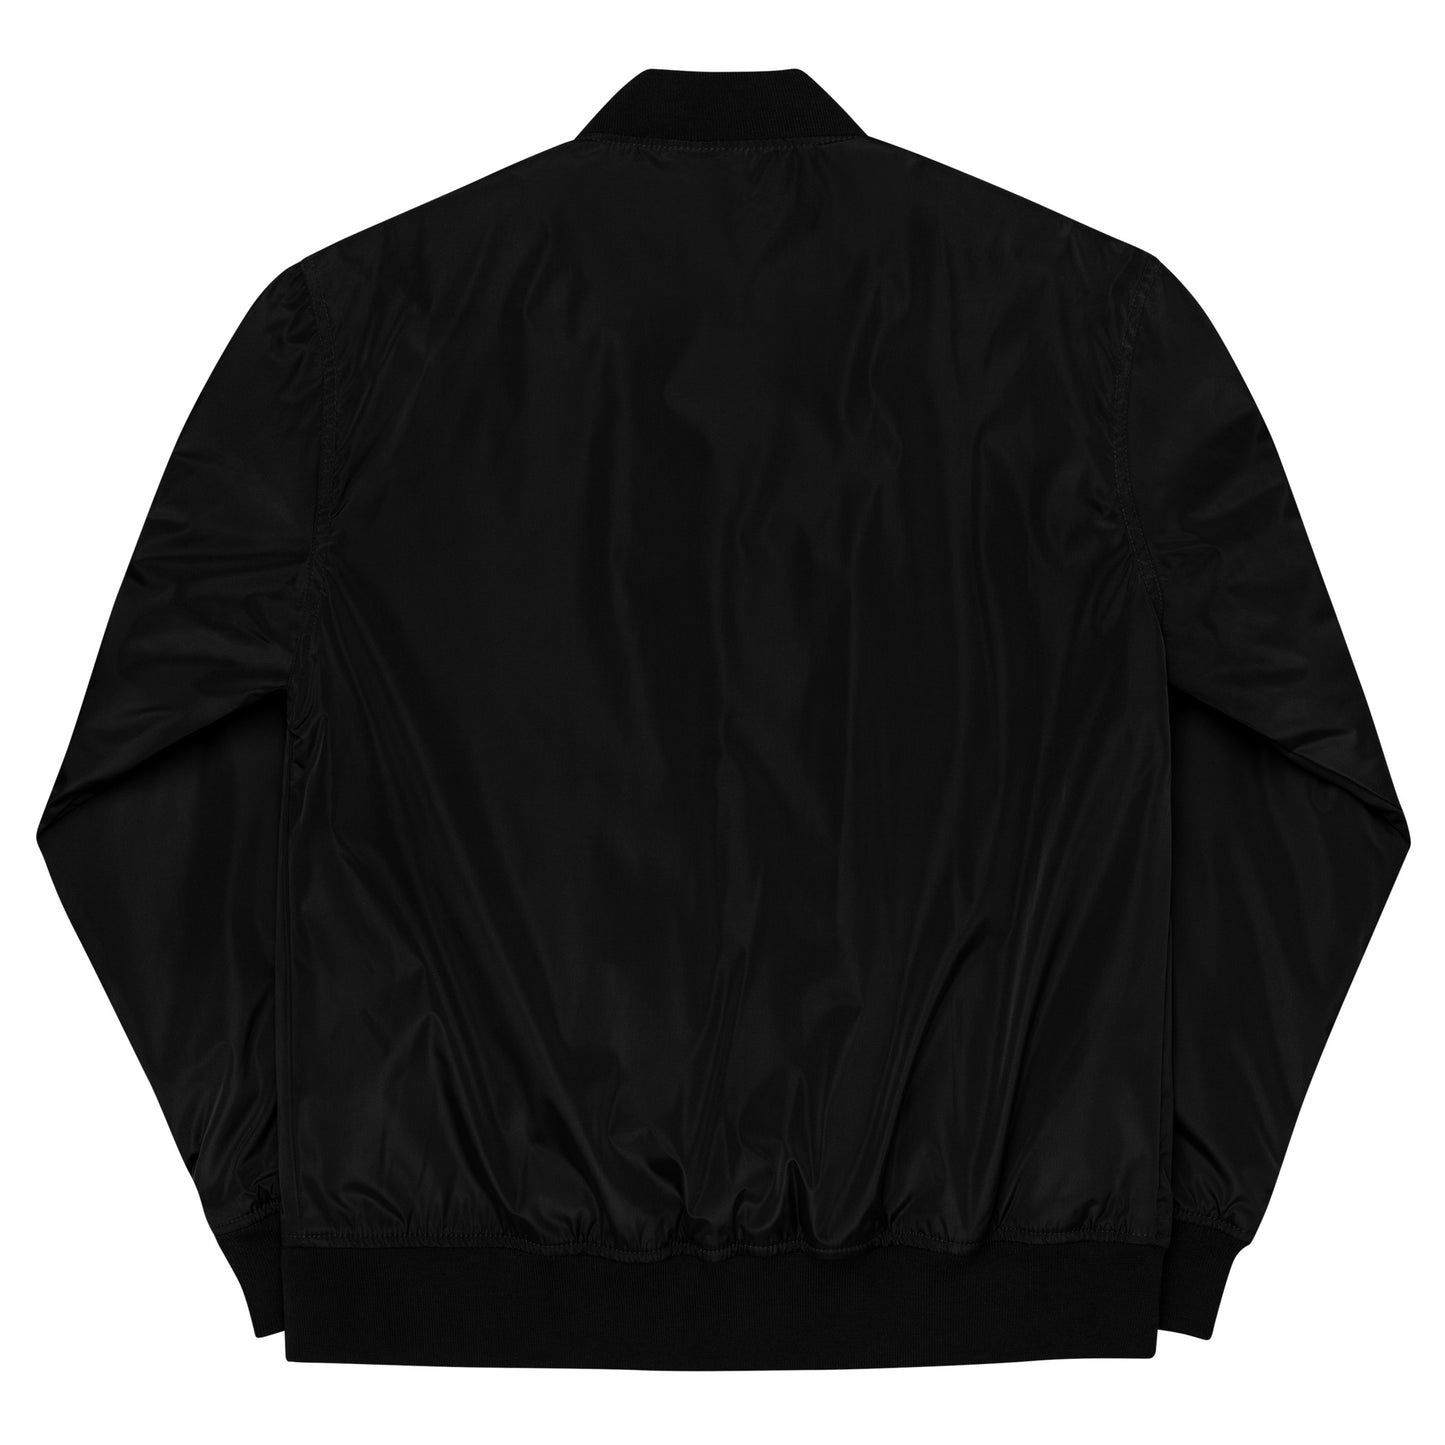 Freedom Premium recycled bomber jacket